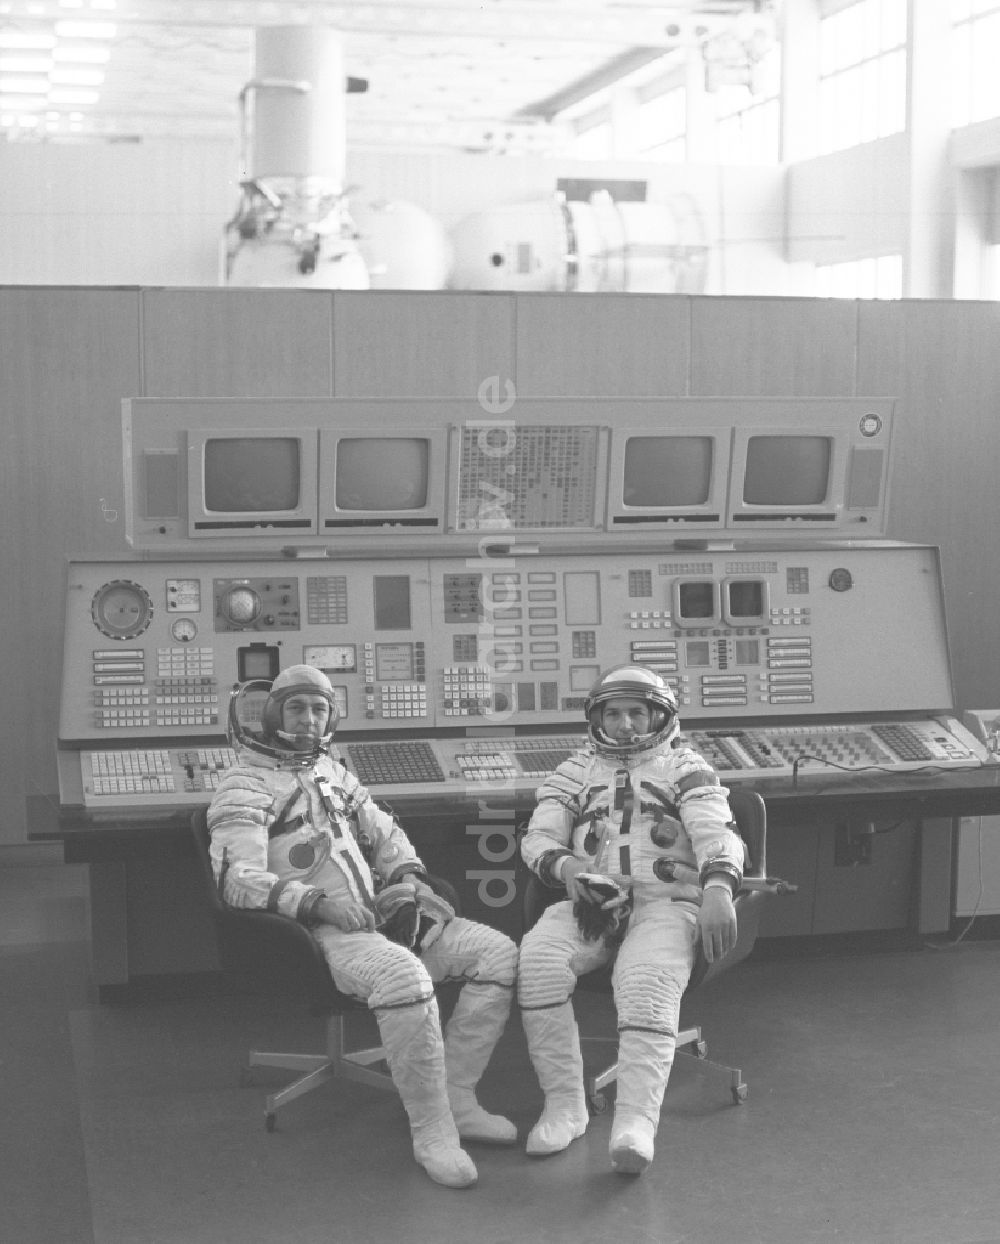 Baikonur: Die Kosmonauten Pjotr Iljitsch Klimuk und Witali Iwanowitsch Sewastjanow (1935 - 2010) beim Training in Baikonur in Kasachstan